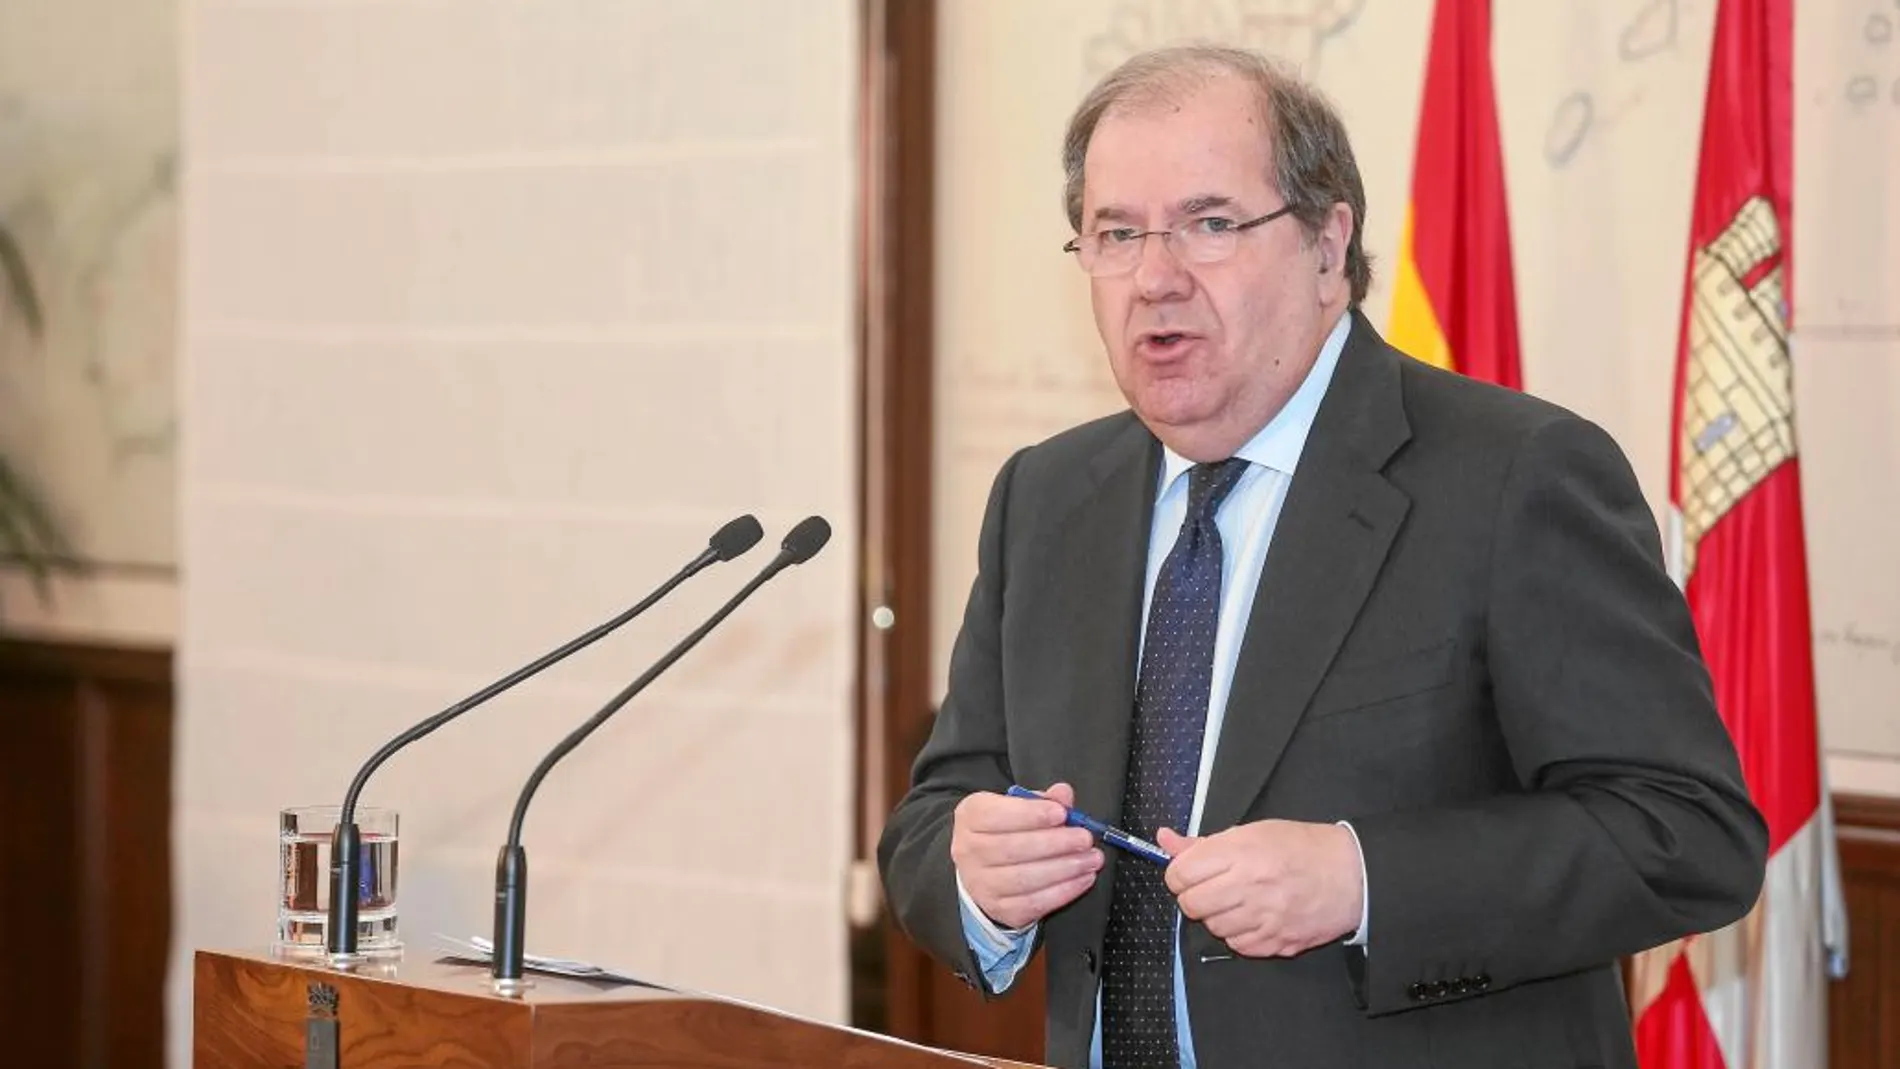 El presidente de Castilla y León, Juan Vicente Herrera, desgrana los Presupuestos para Castilla y León para el presente año